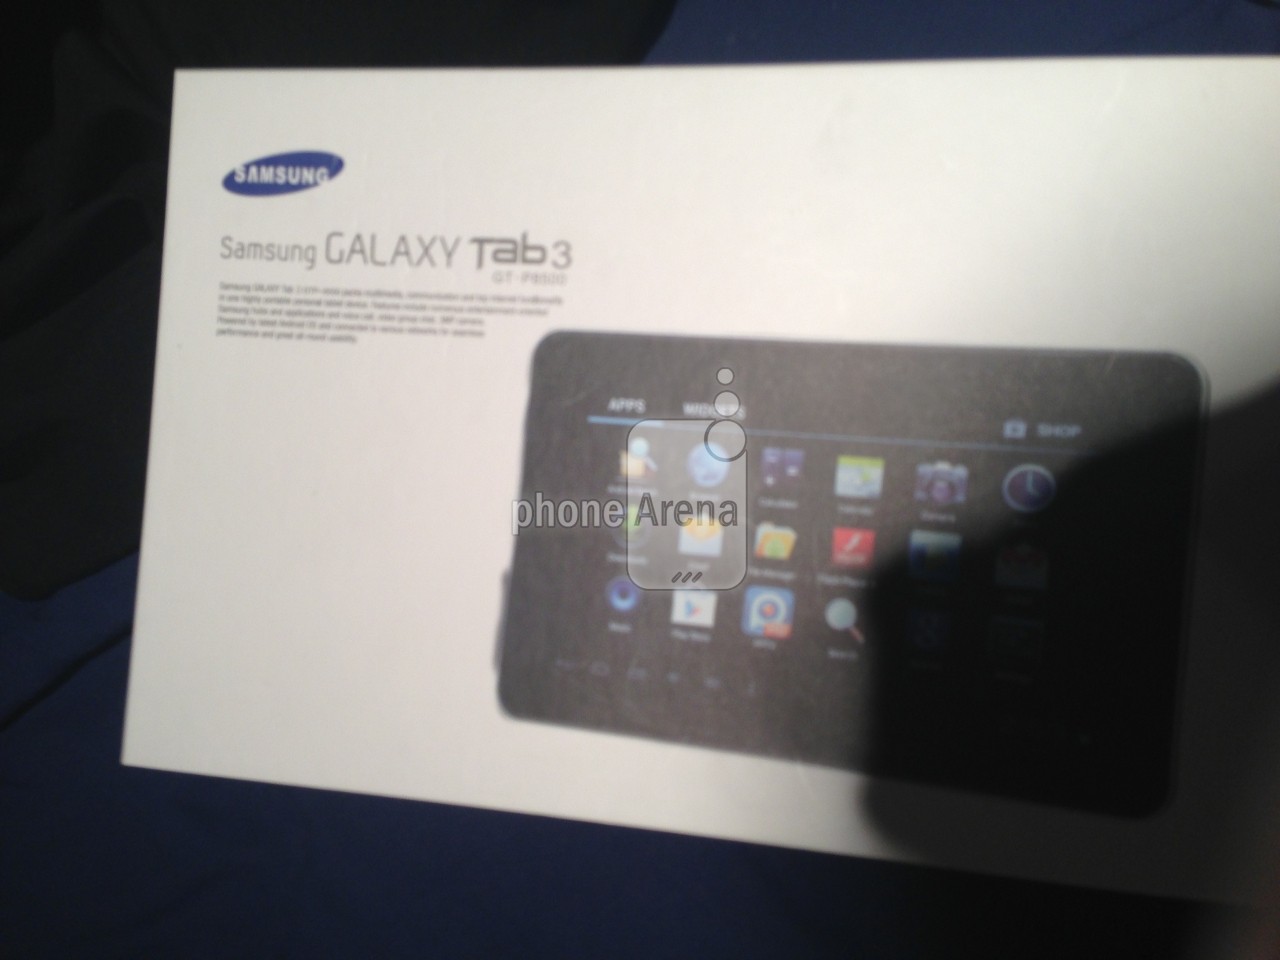 Samsung-Galaxy-Tab-3-tablet.jpg